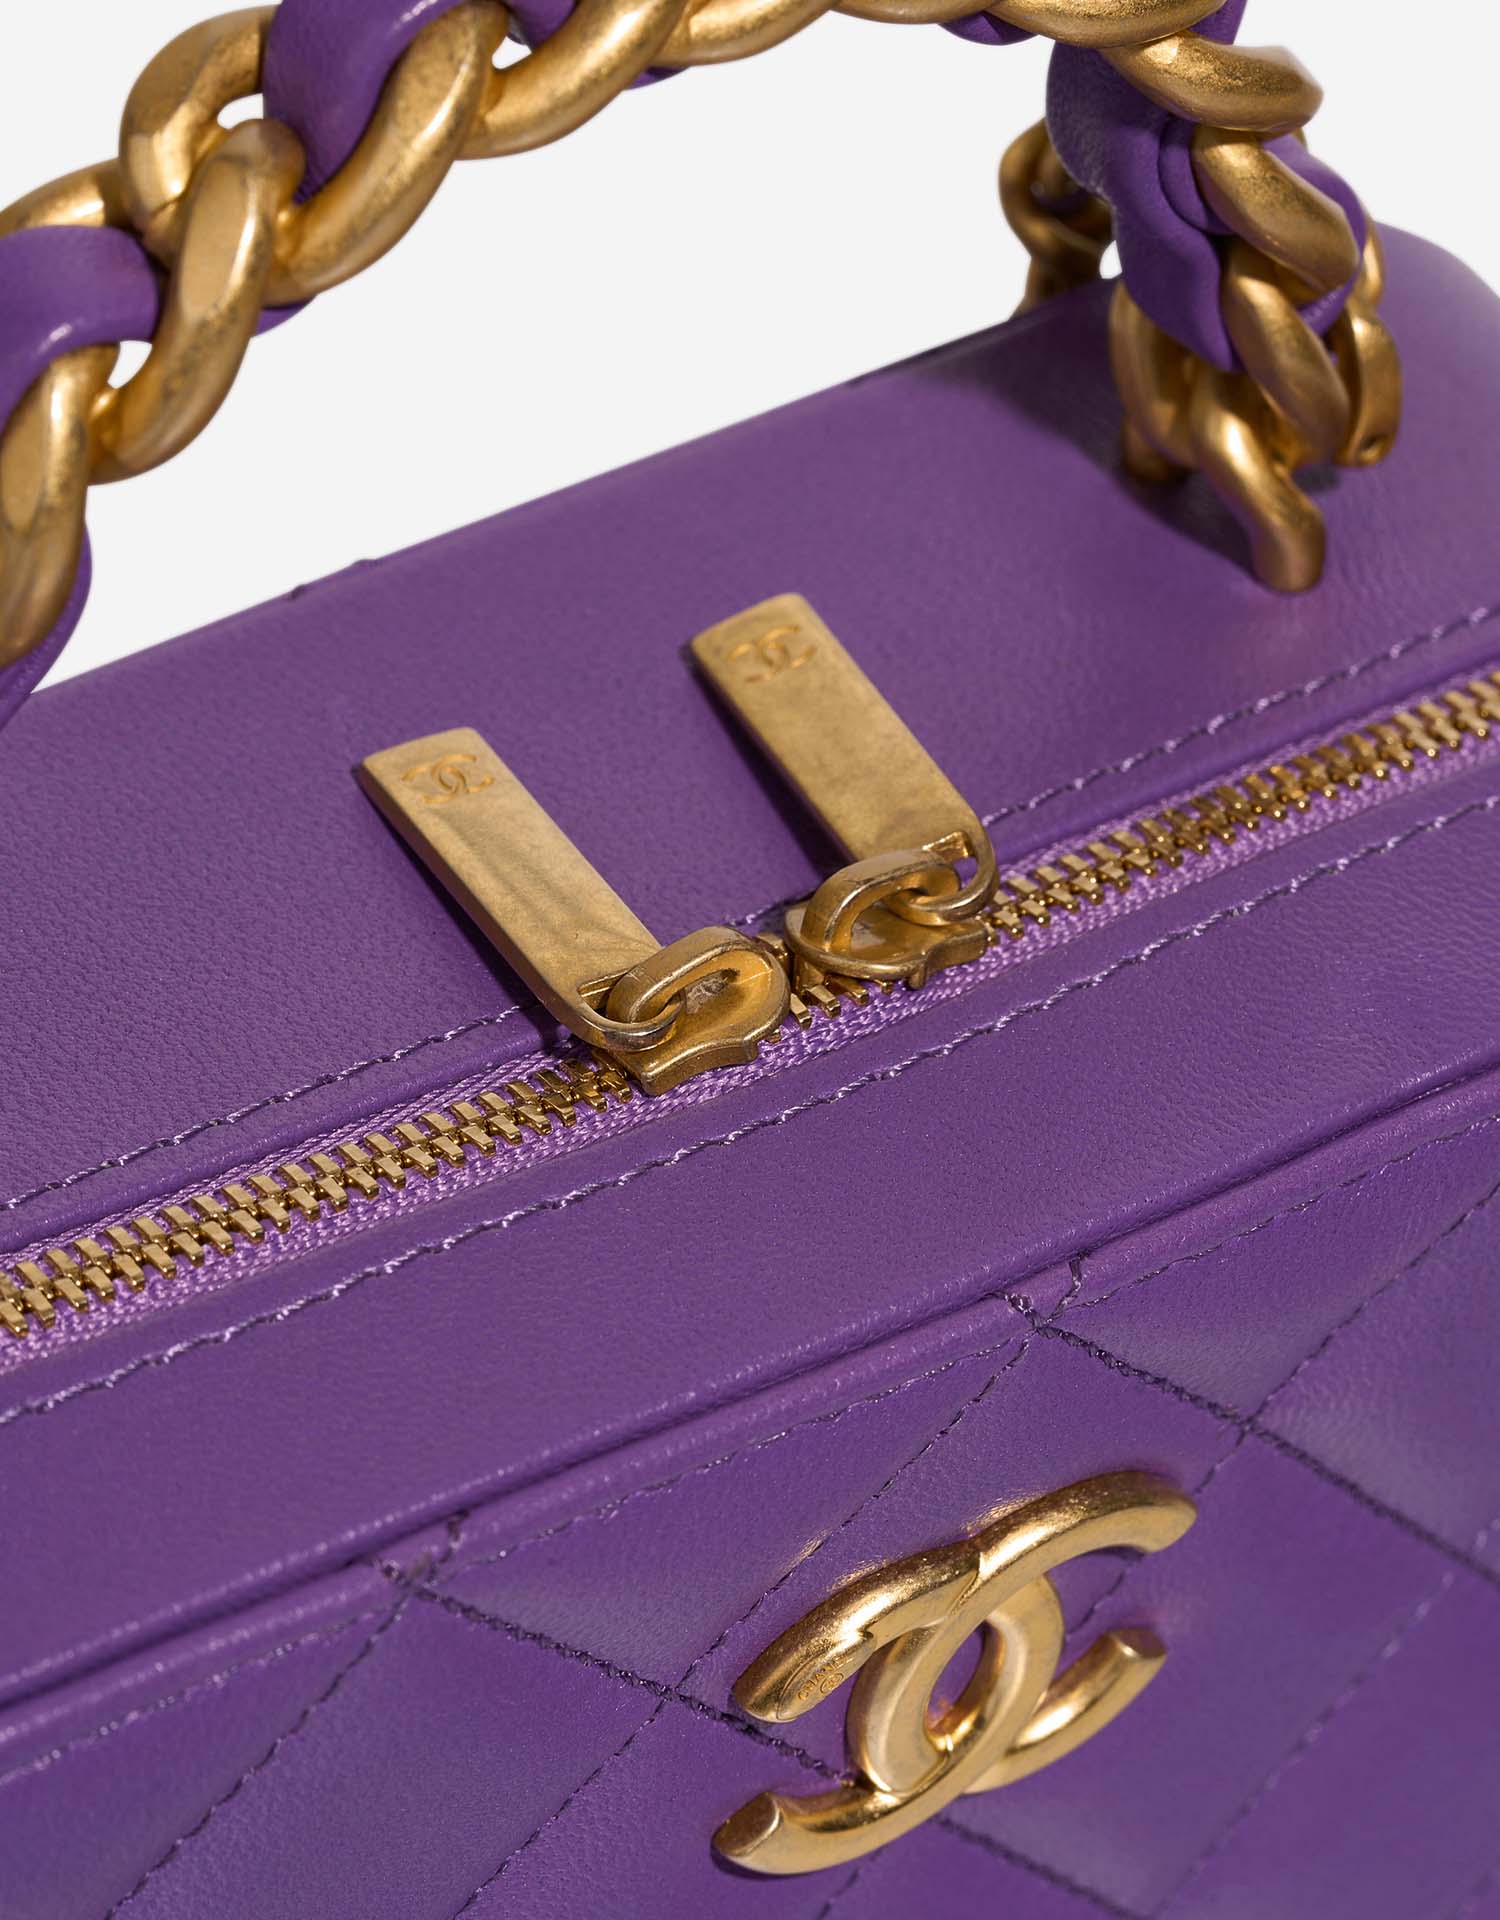 Chanel Vanity Small Violet Closing System | Verkaufen Sie Ihre Designer-Tasche auf Saclab.com